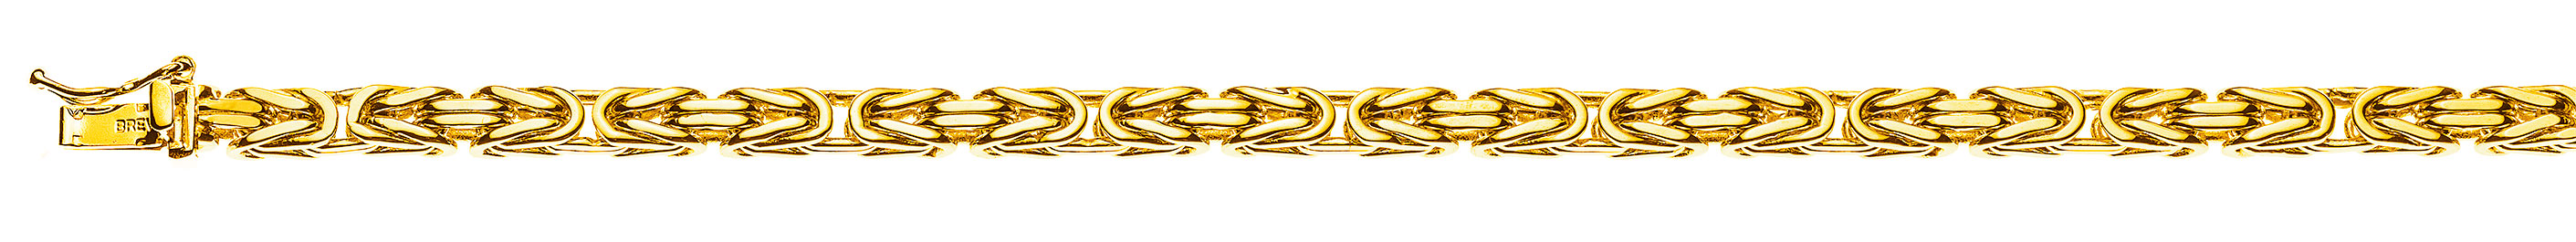 AURONOS Prestige Halskette Gelbgold 18K Königskette 45cm 4mm